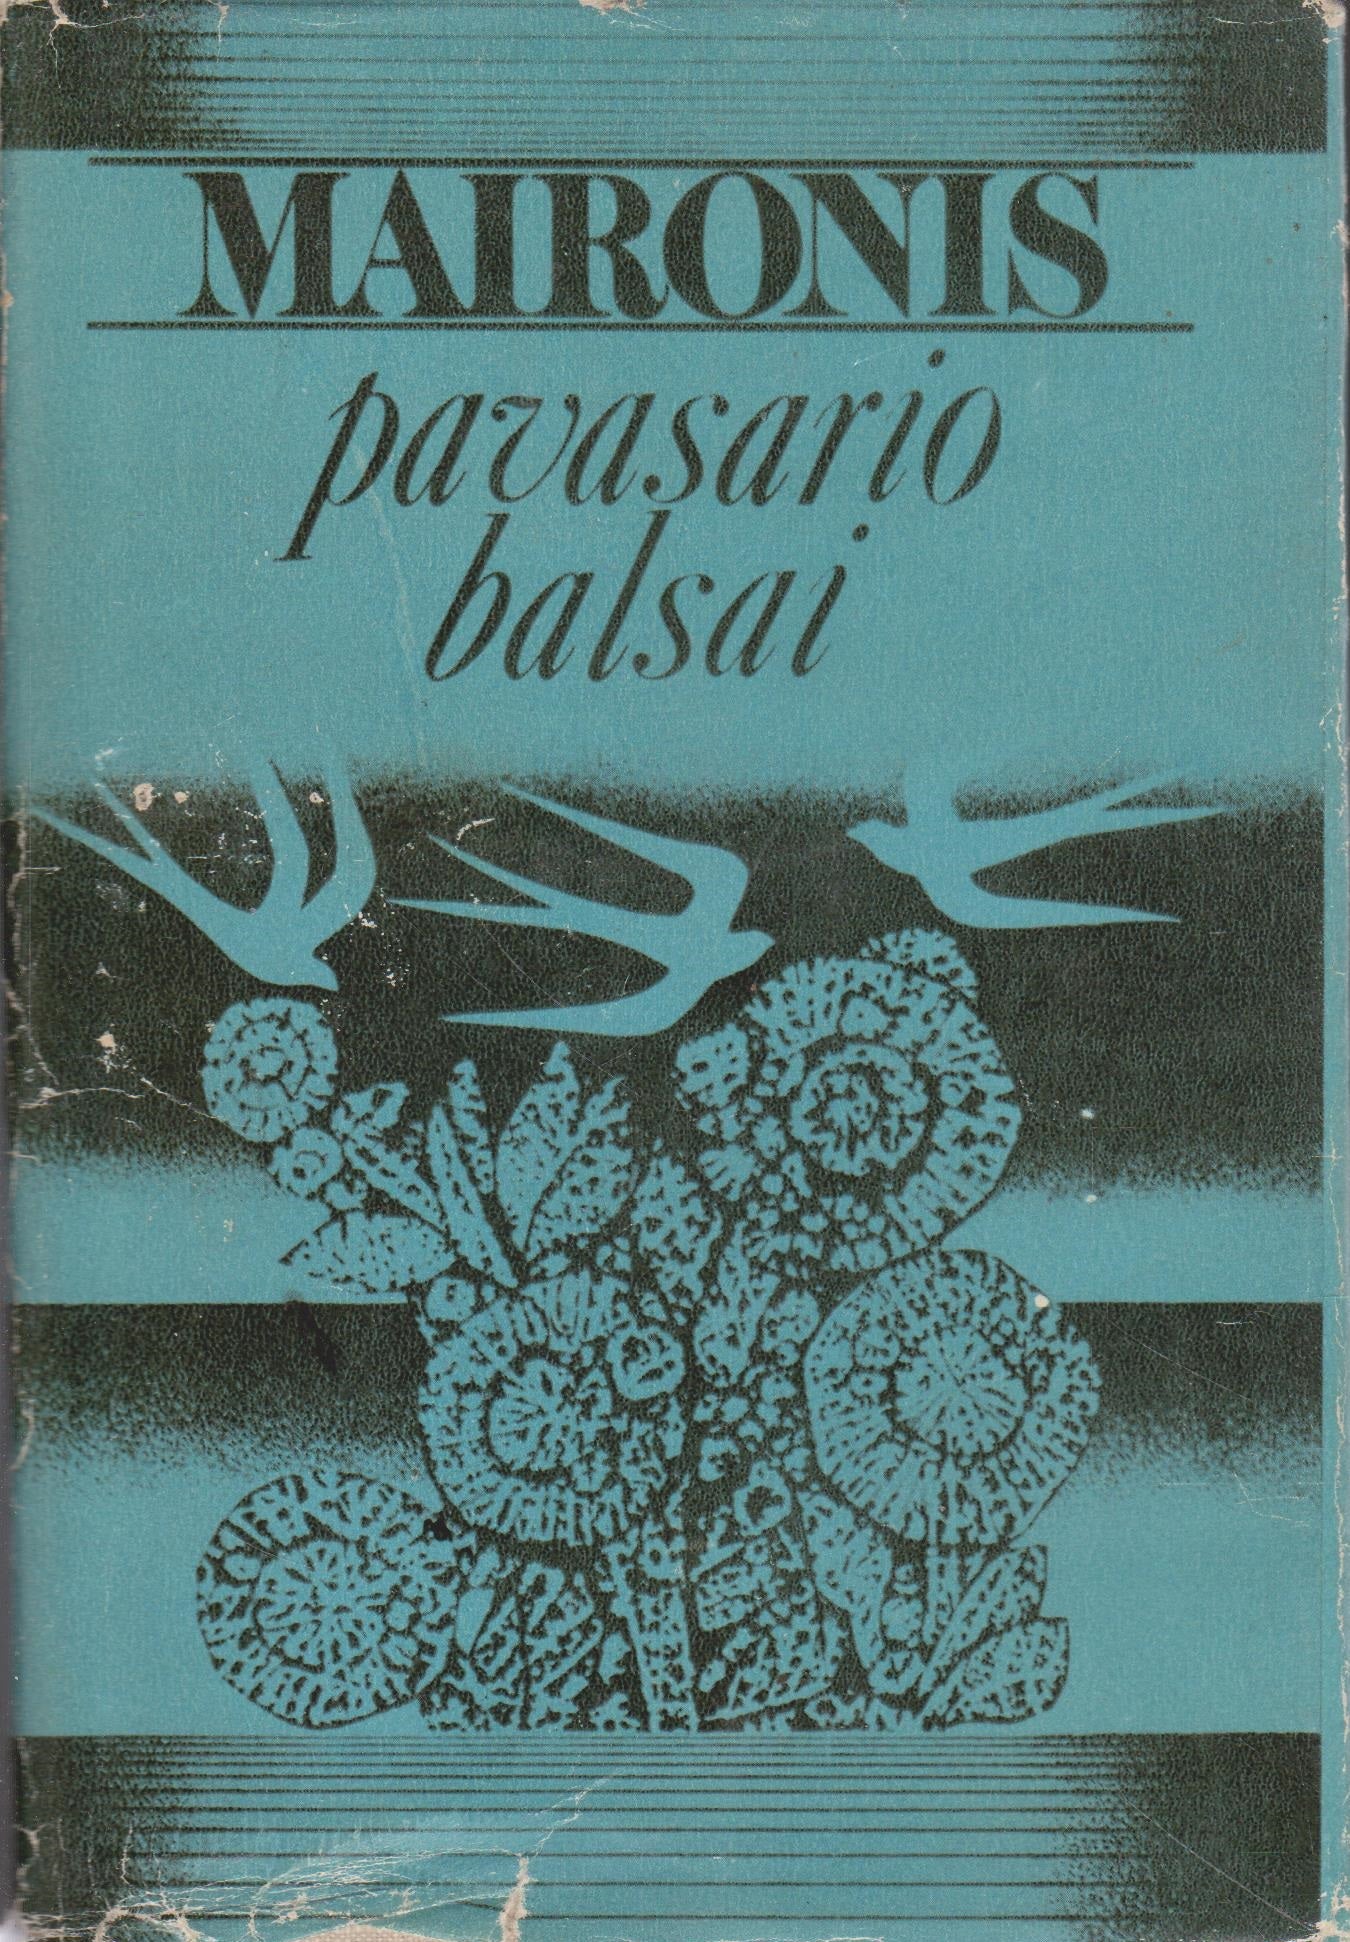 Maironis - Pavasario balsai, 1976